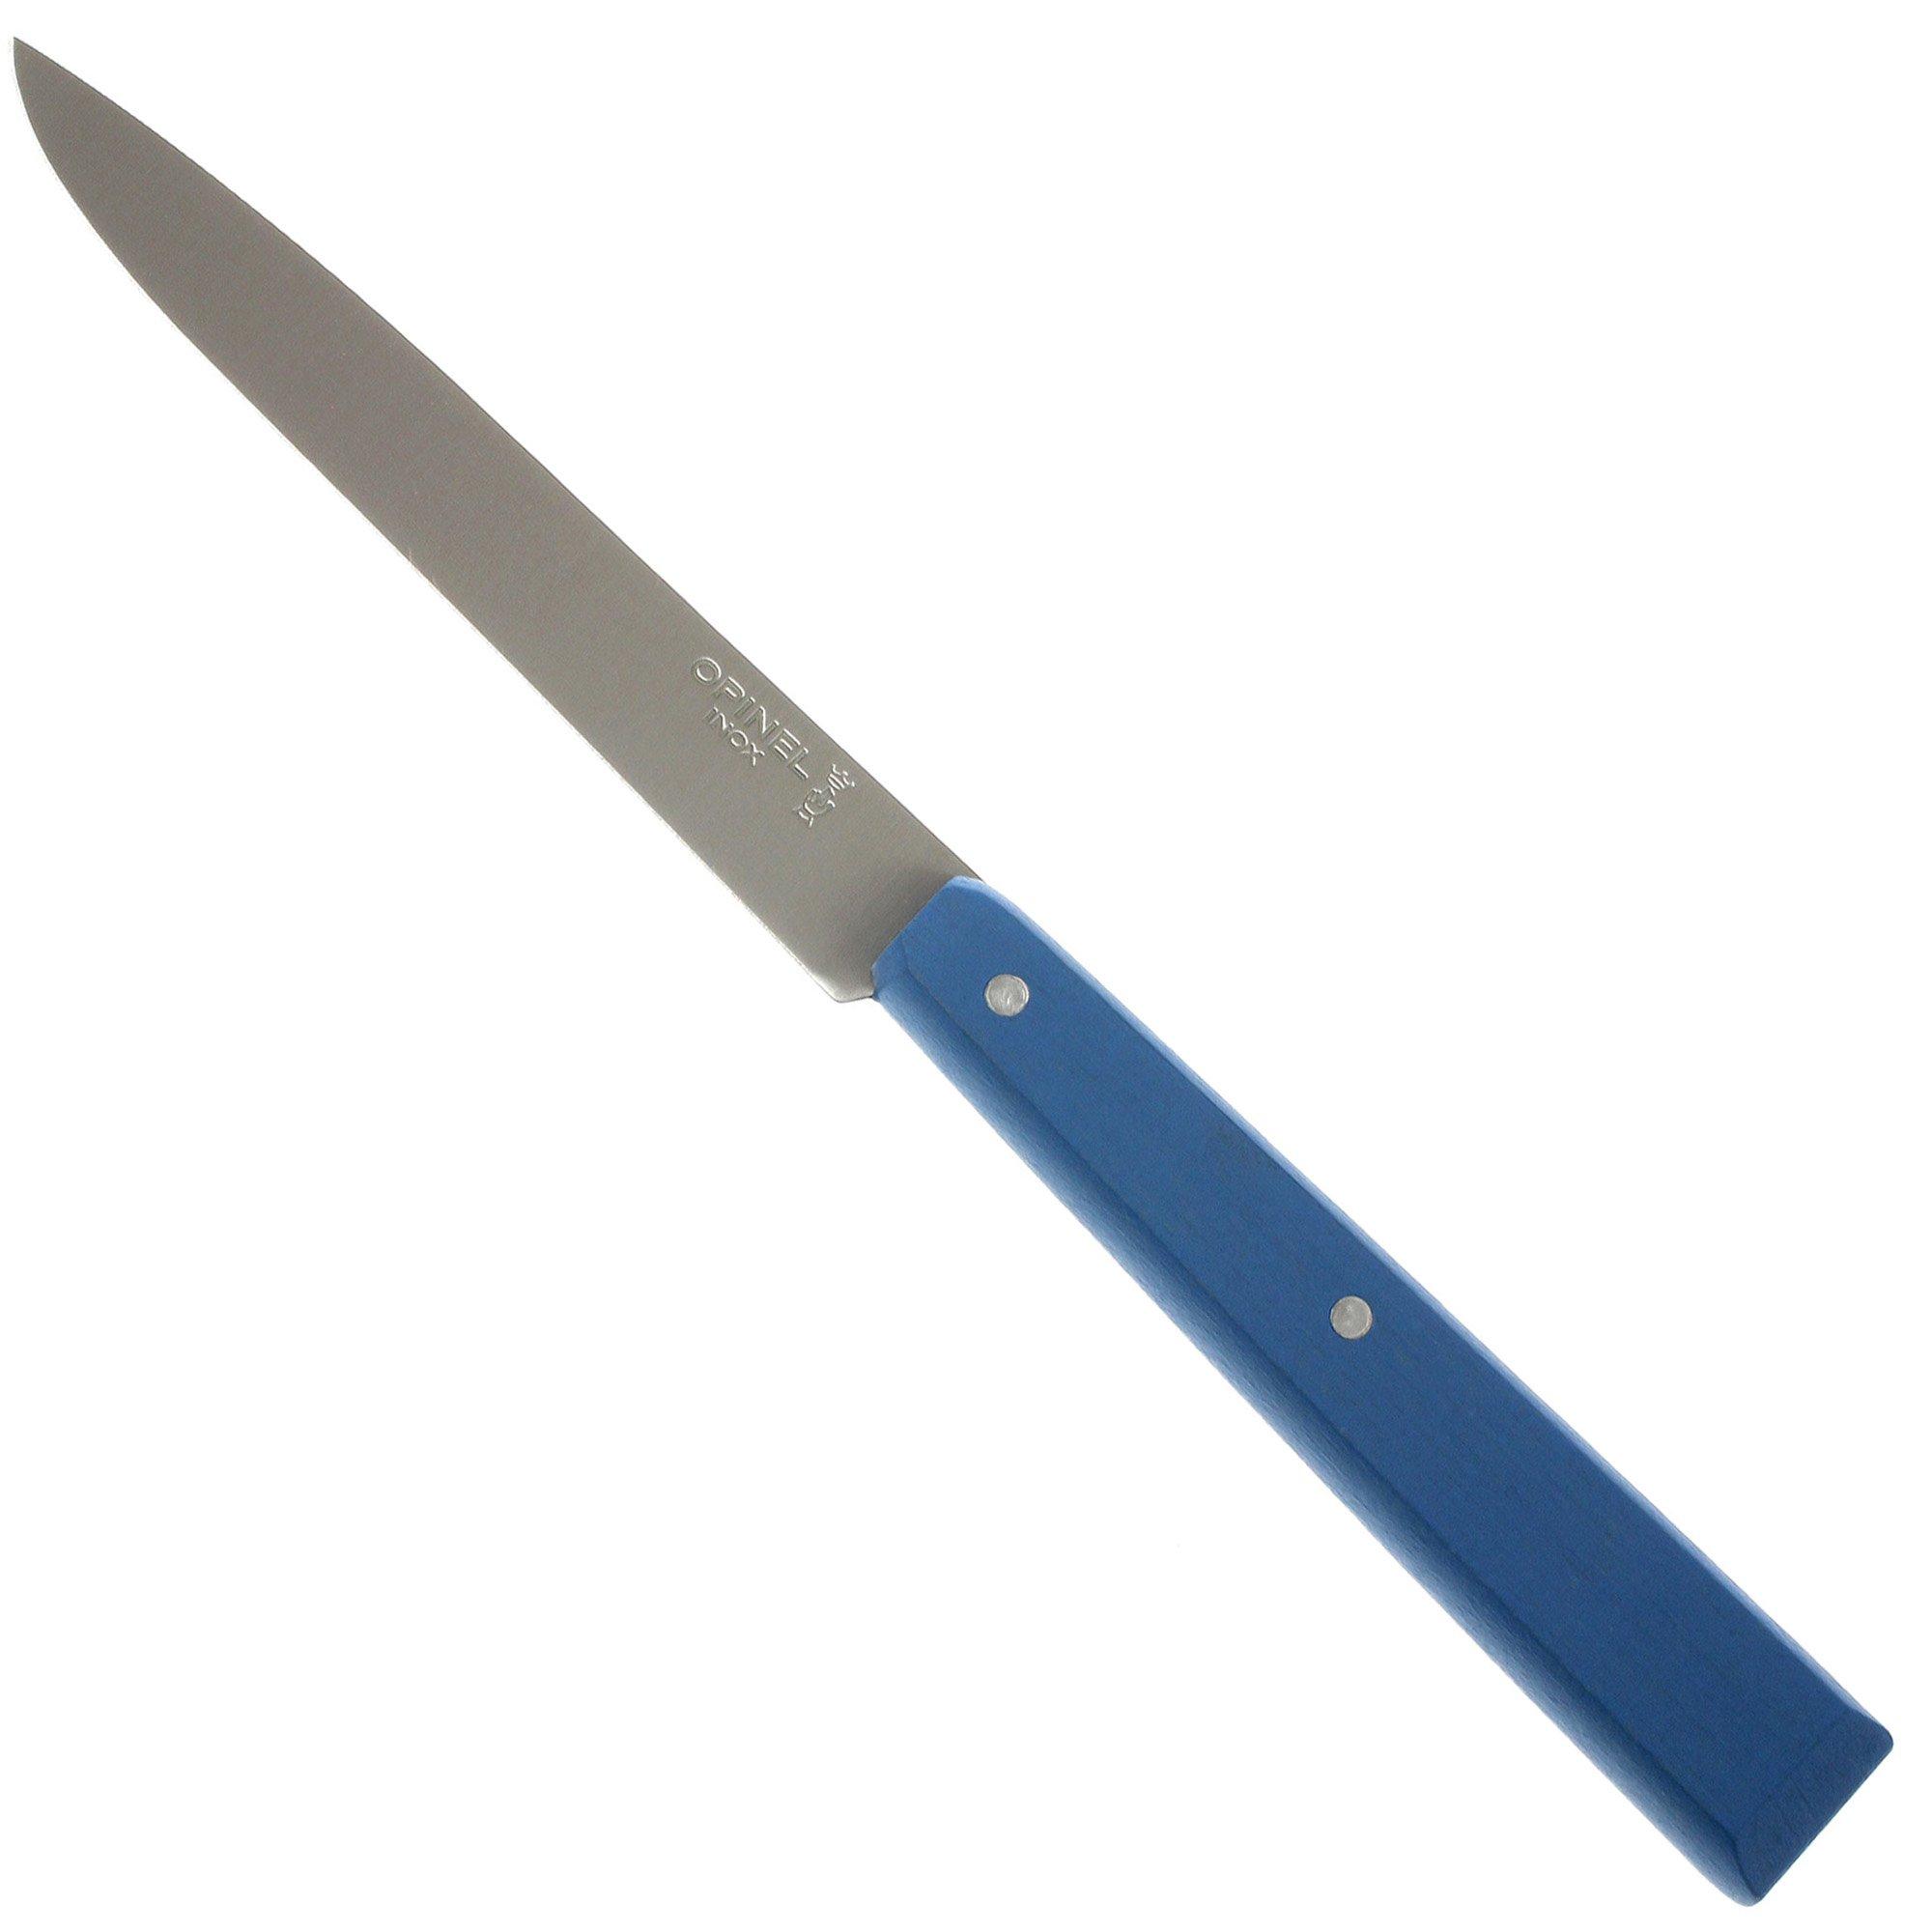 Choisir les meilleurs couteaux à viande